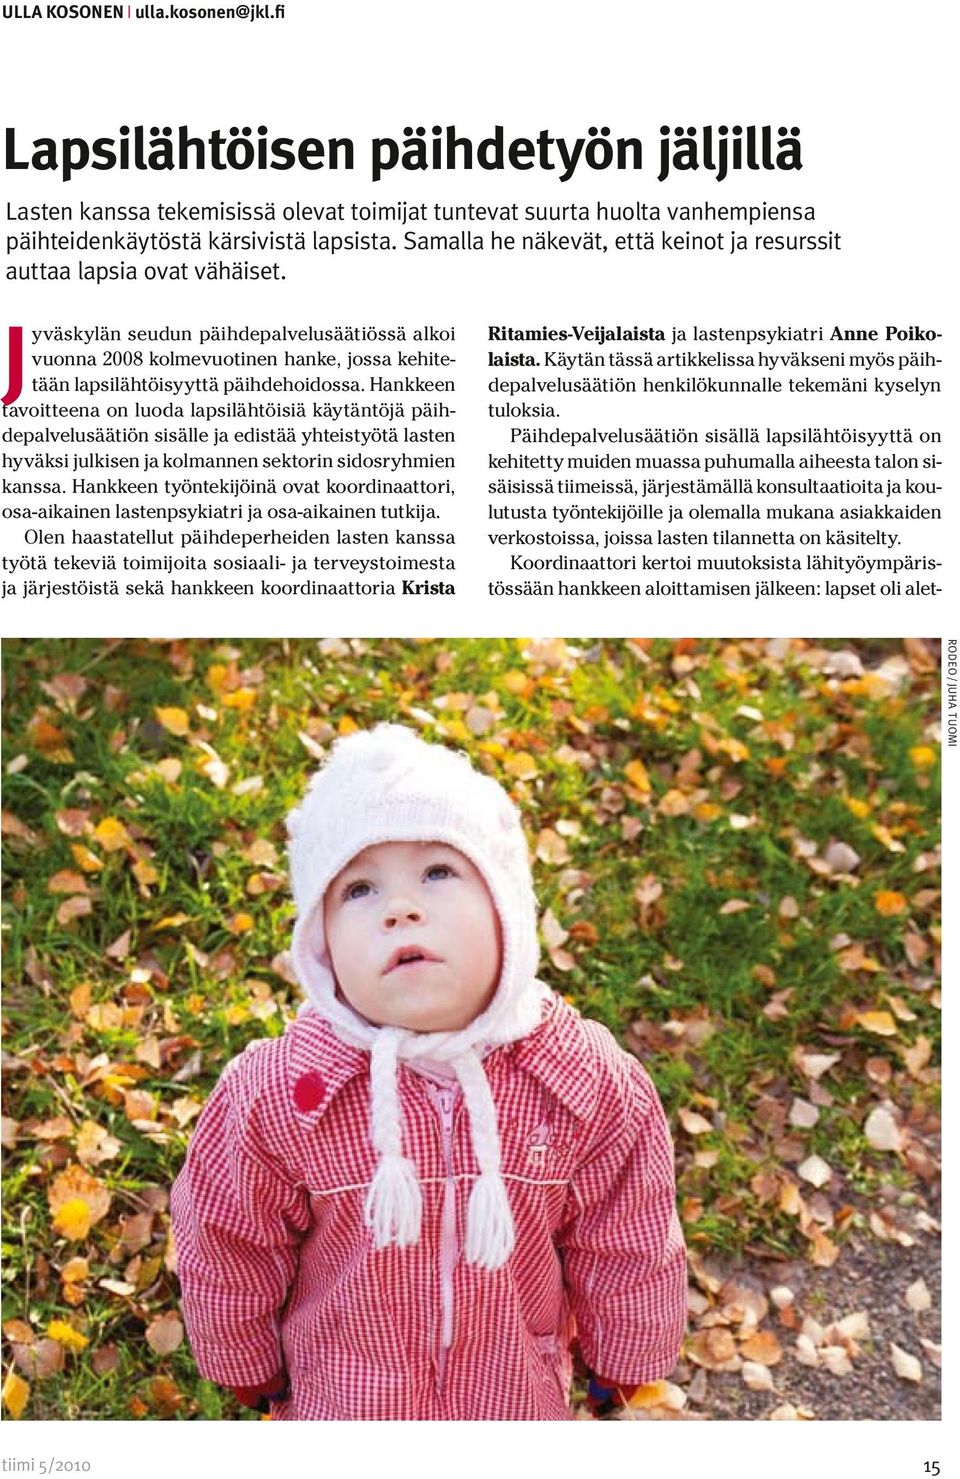 Jyväskylän seudun päihdepalvelusäätiössä alkoi vuonna 2008 kolmevuotinen hanke, jossa kehitetään lapsilähtöisyyttä päihdehoidossa.